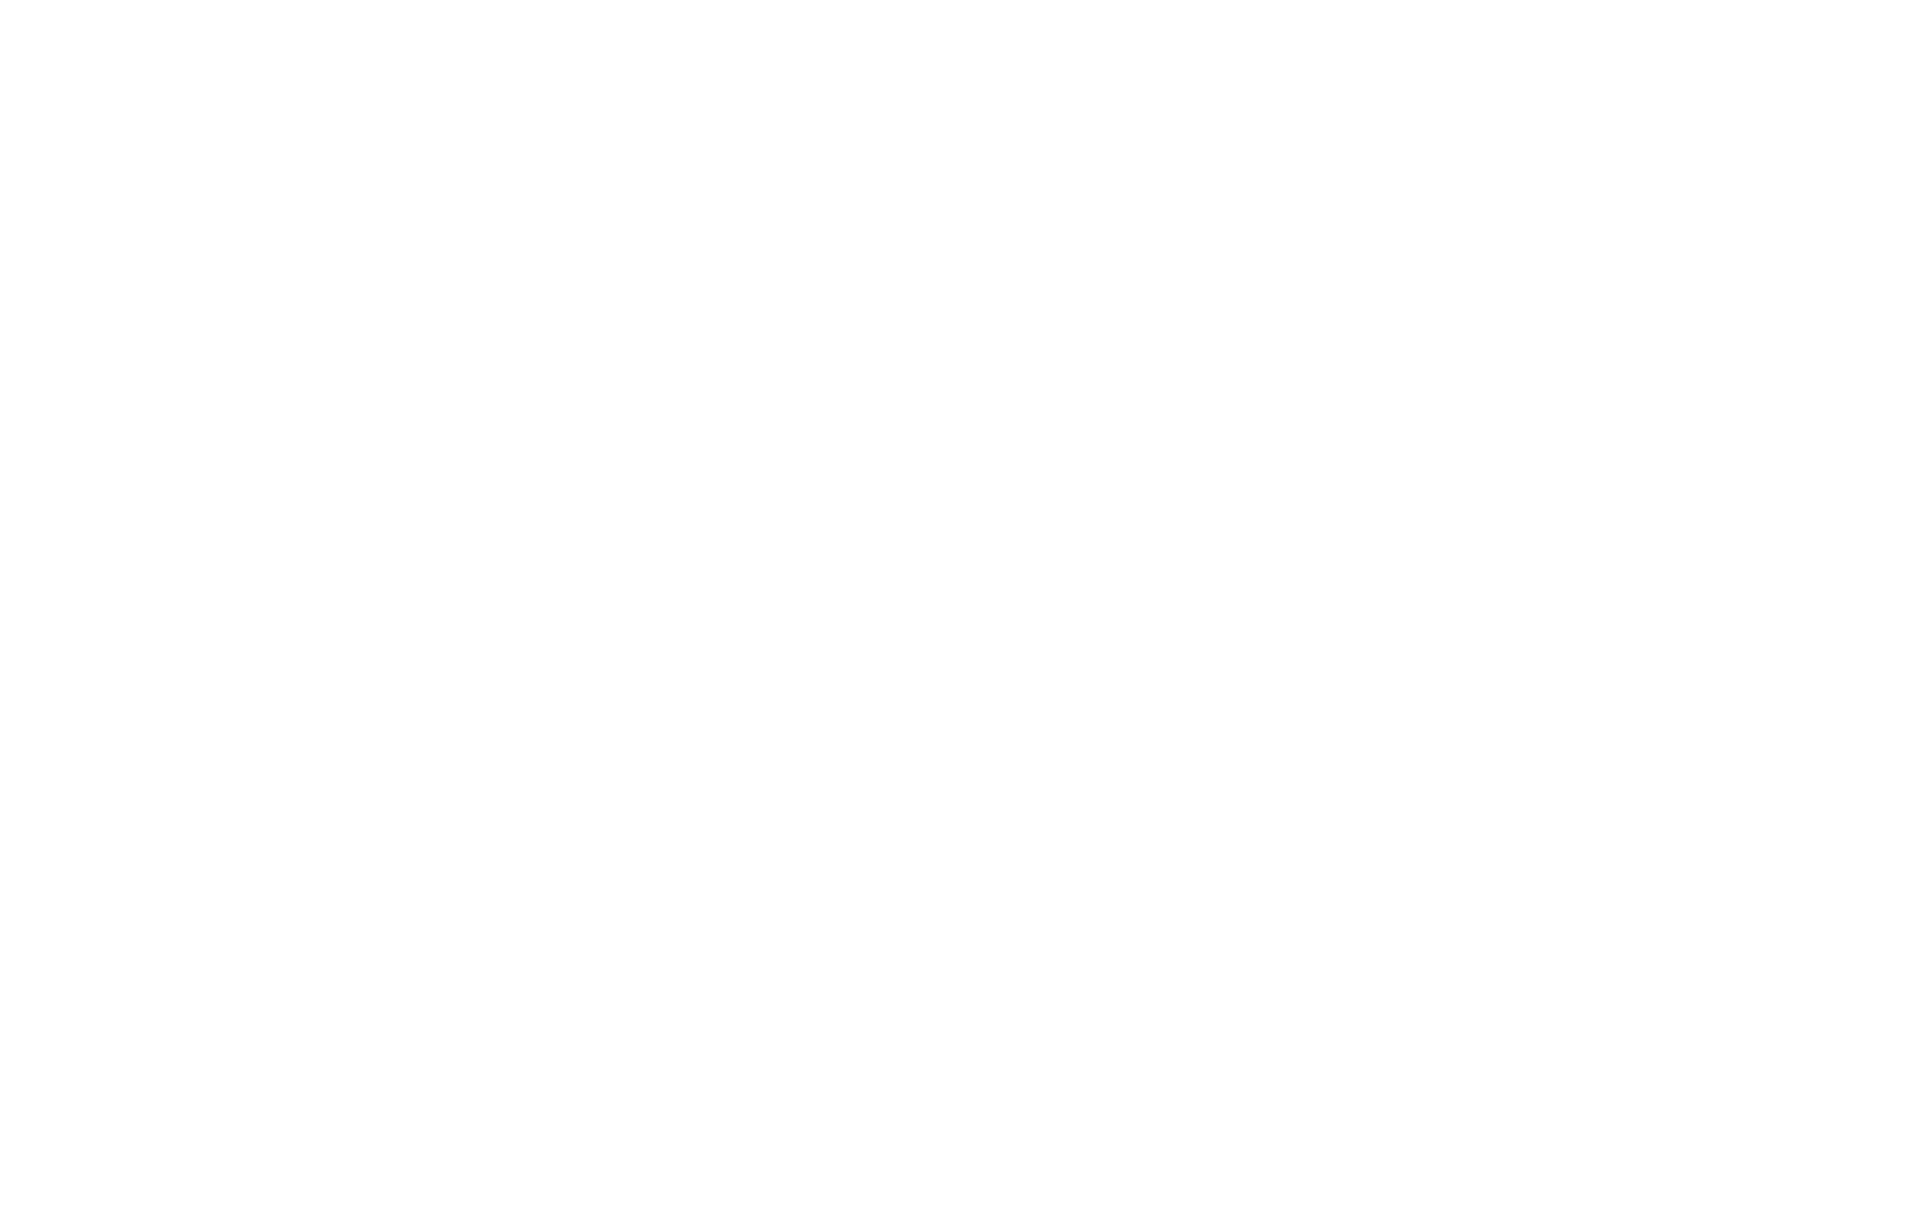 Le certificats d'économies d'énergie